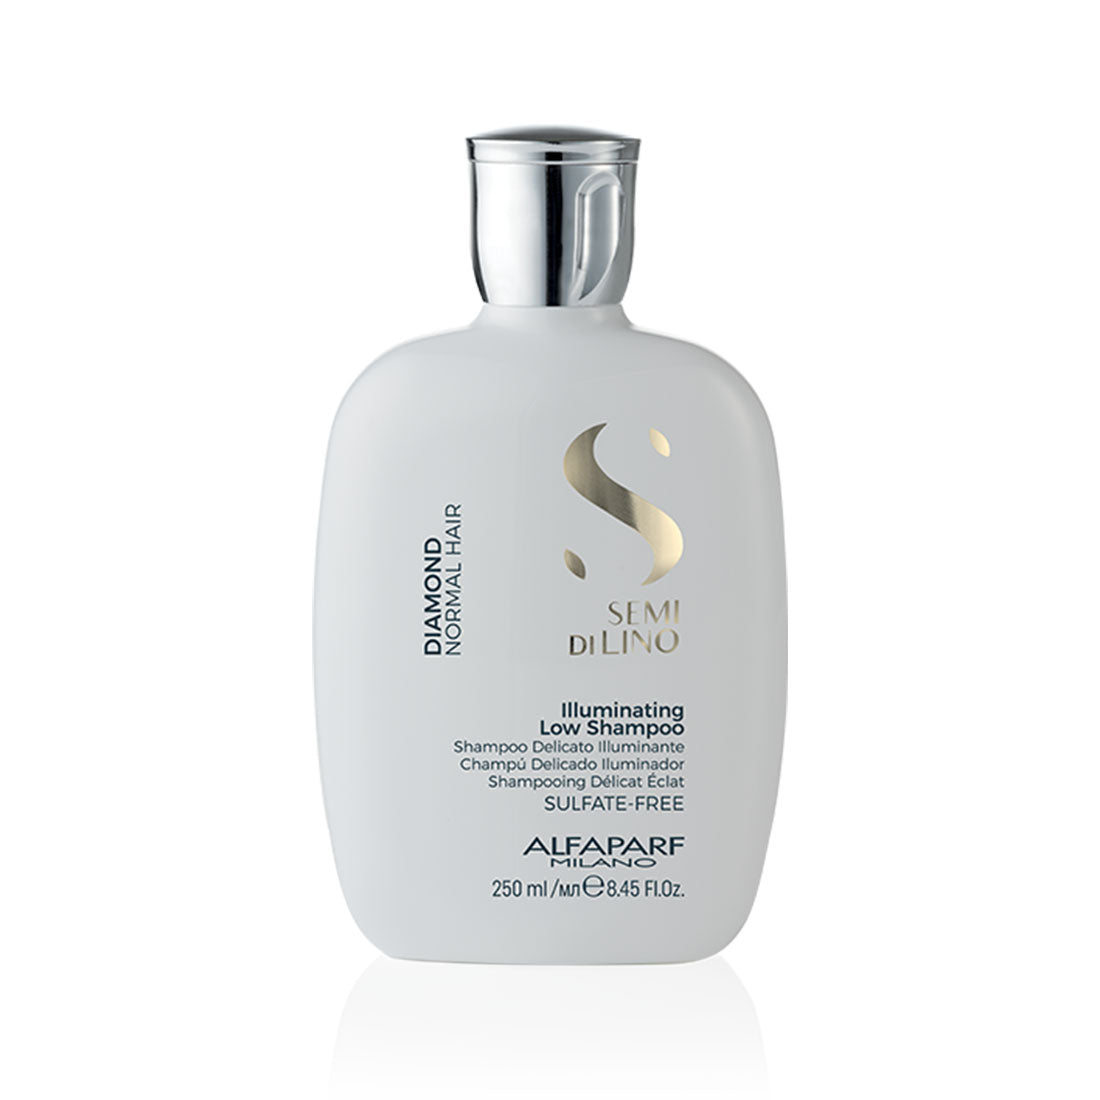 SDL Diamond Illuminating Shampoo 250ml - Limpieza delicada, aporta brillo al cabello